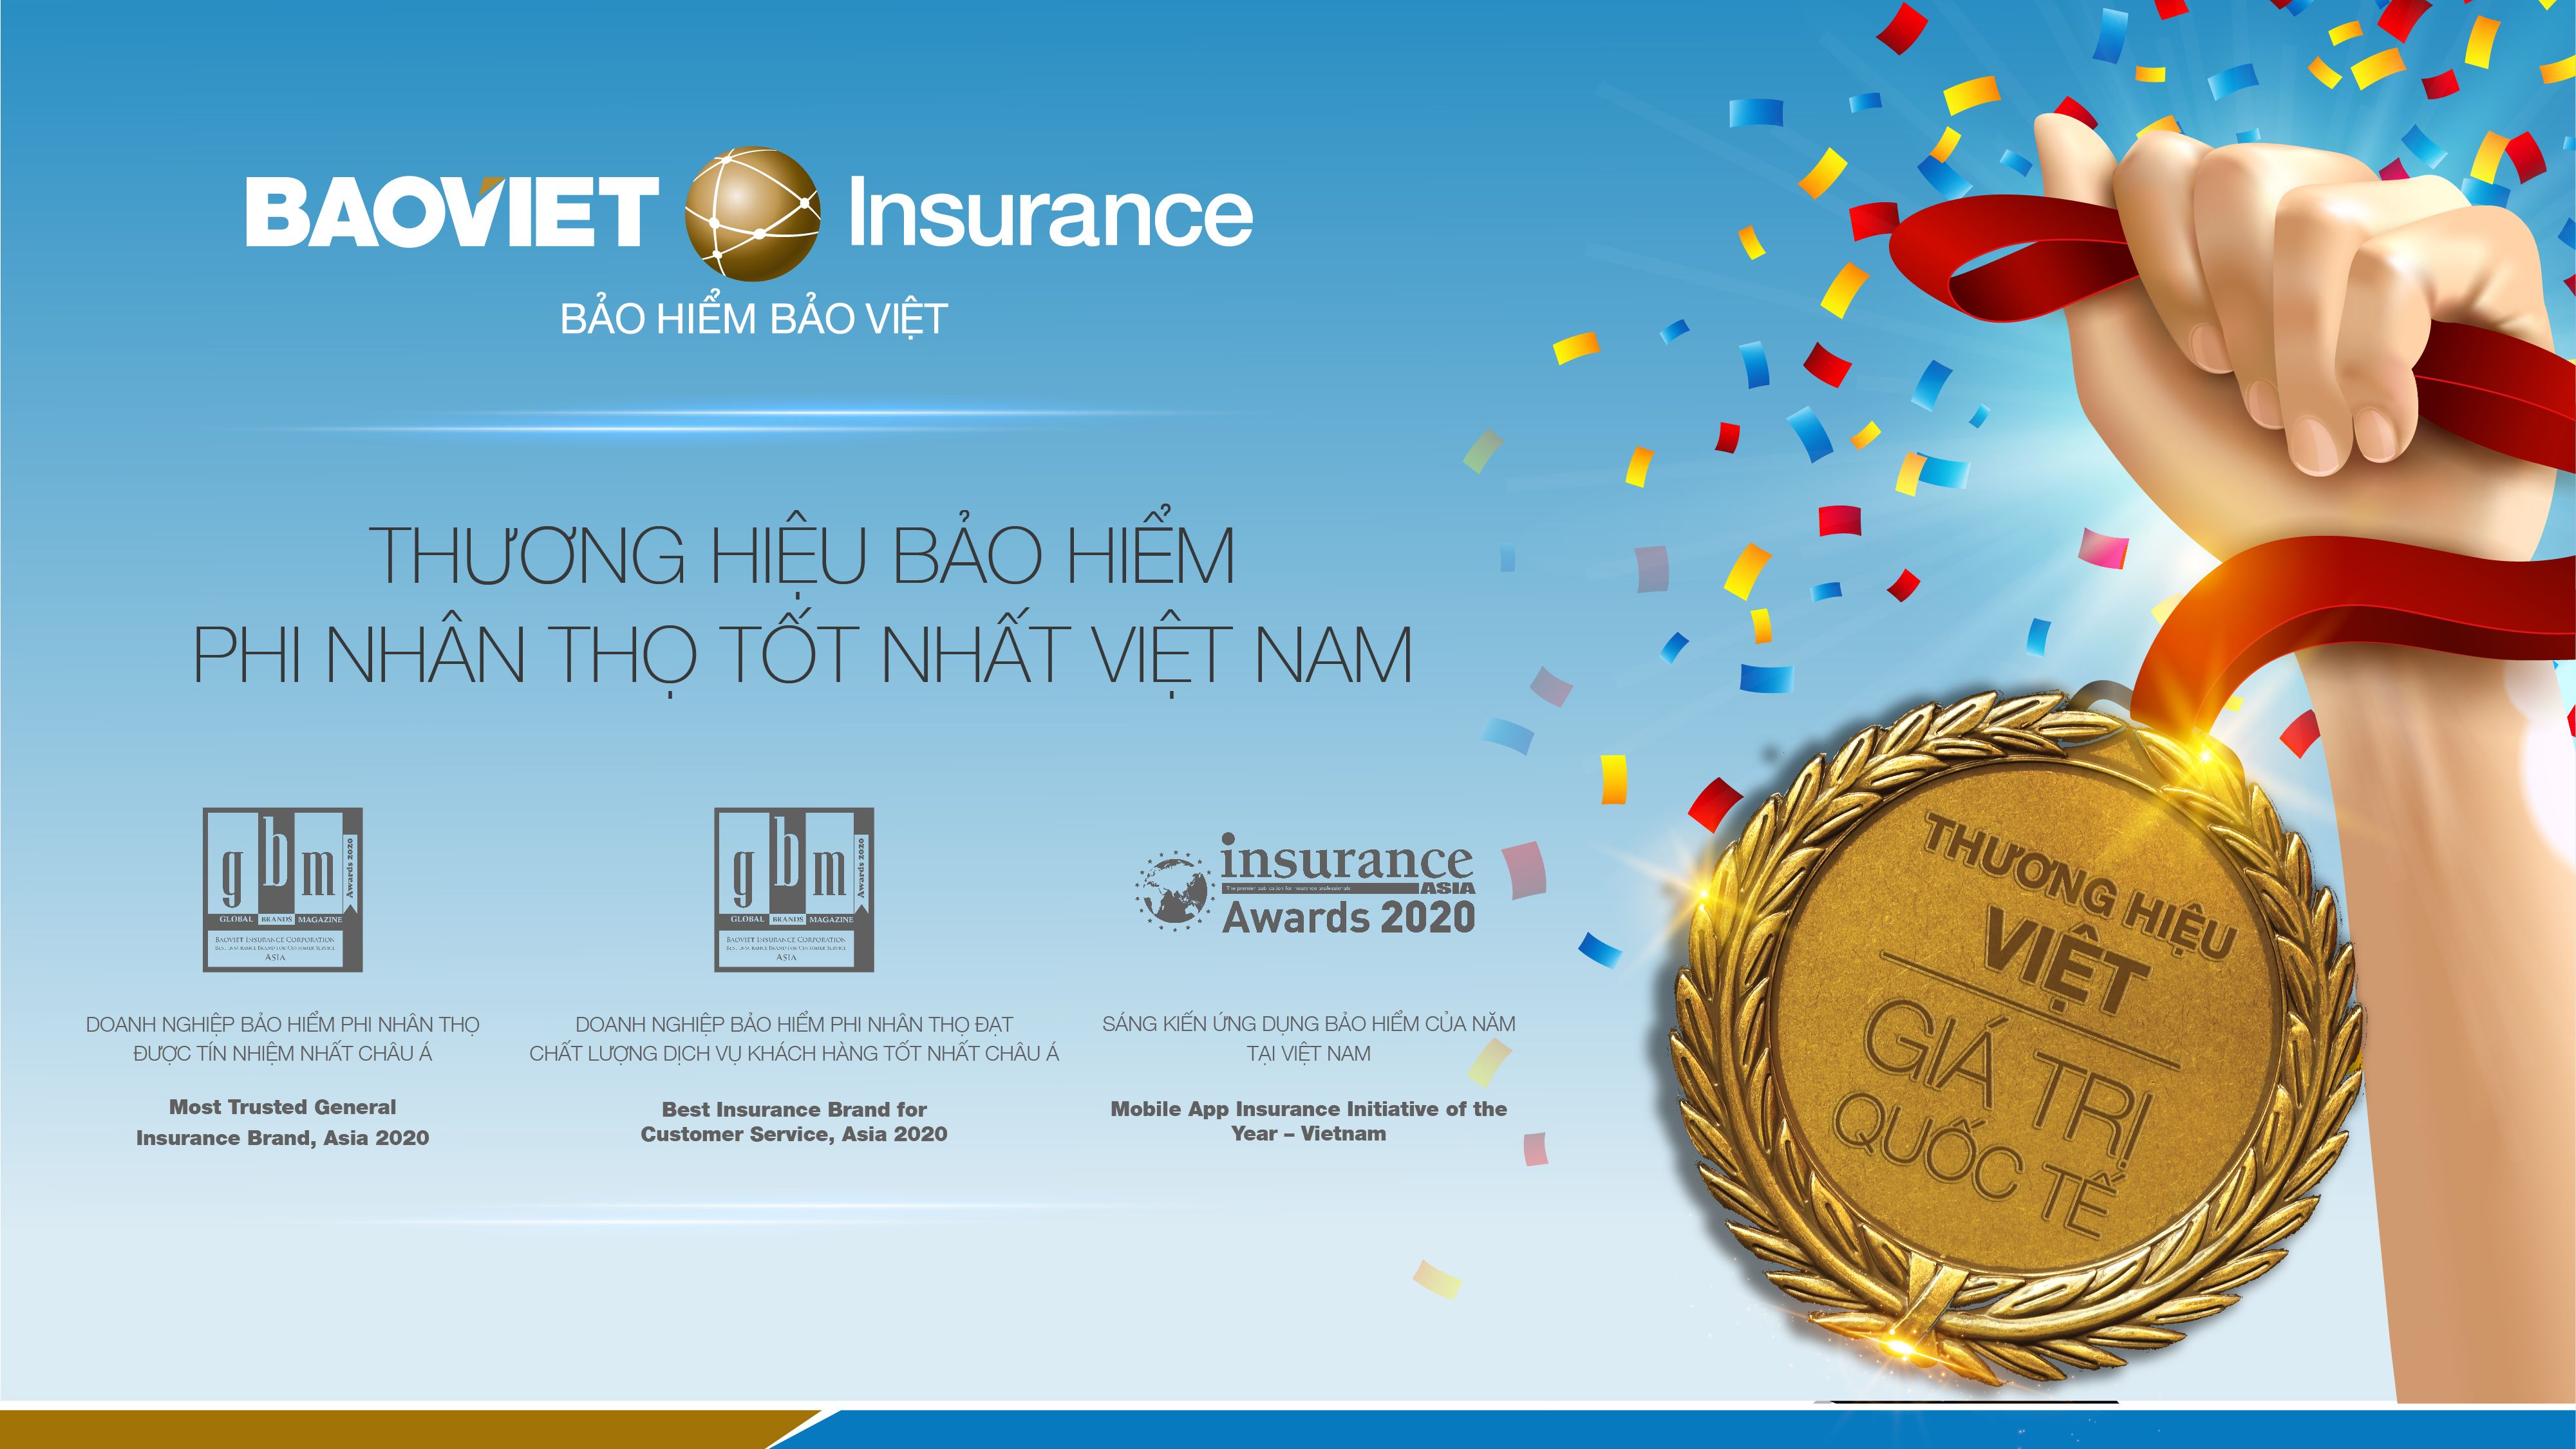 Bảo hiểm Bảo Việt dành trọn 2 giải thưởng danh giá khu vực Châu Á